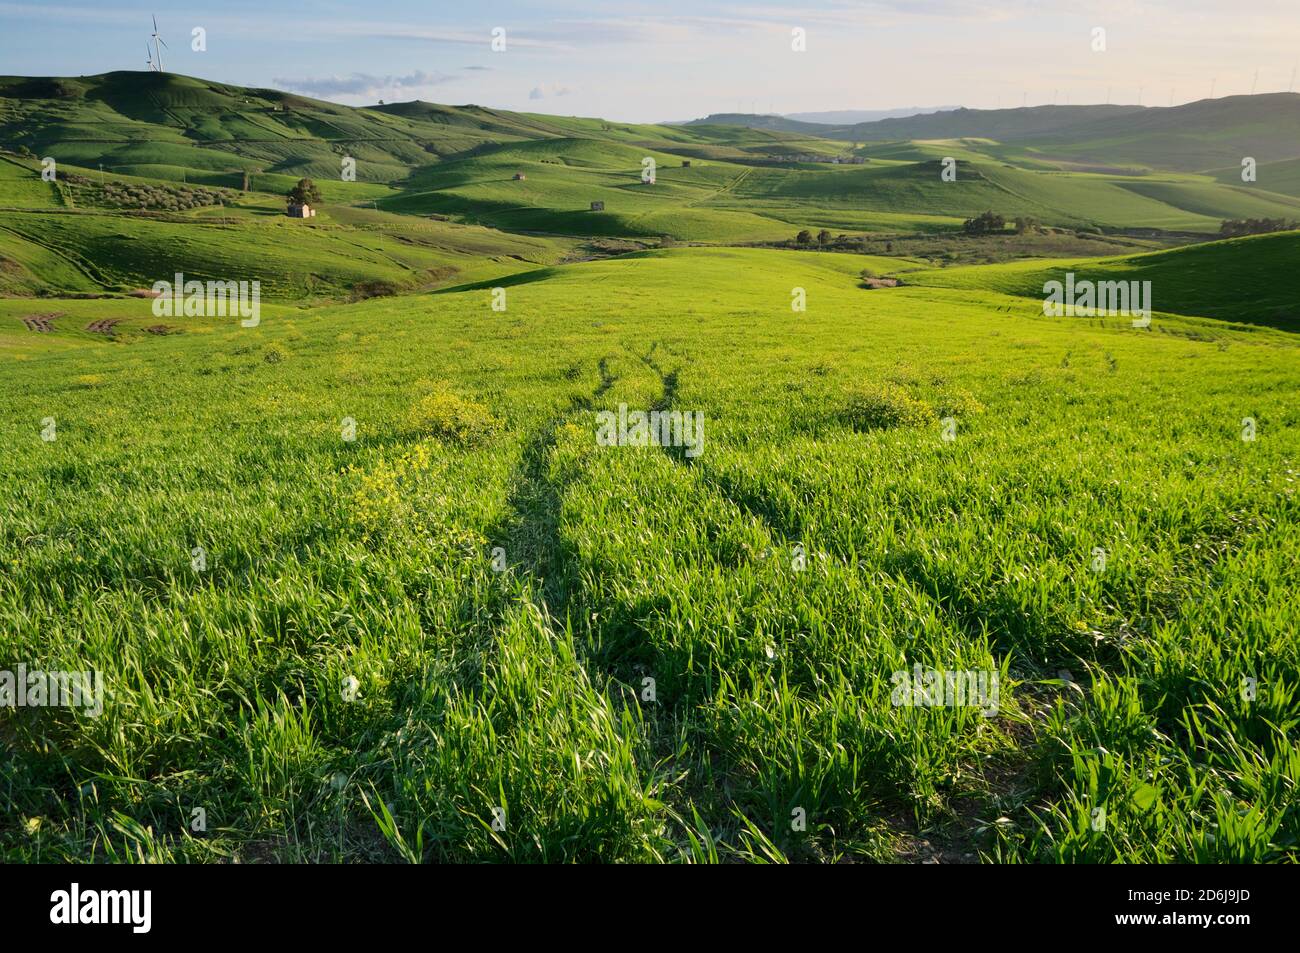 Extensión de hierba verde en colinas onduladas salpicadas de pequeñas casas de campo (Granilia) por la noche, típica de la reforma agraria (ERAS) en Sicilia en el firs Foto de stock